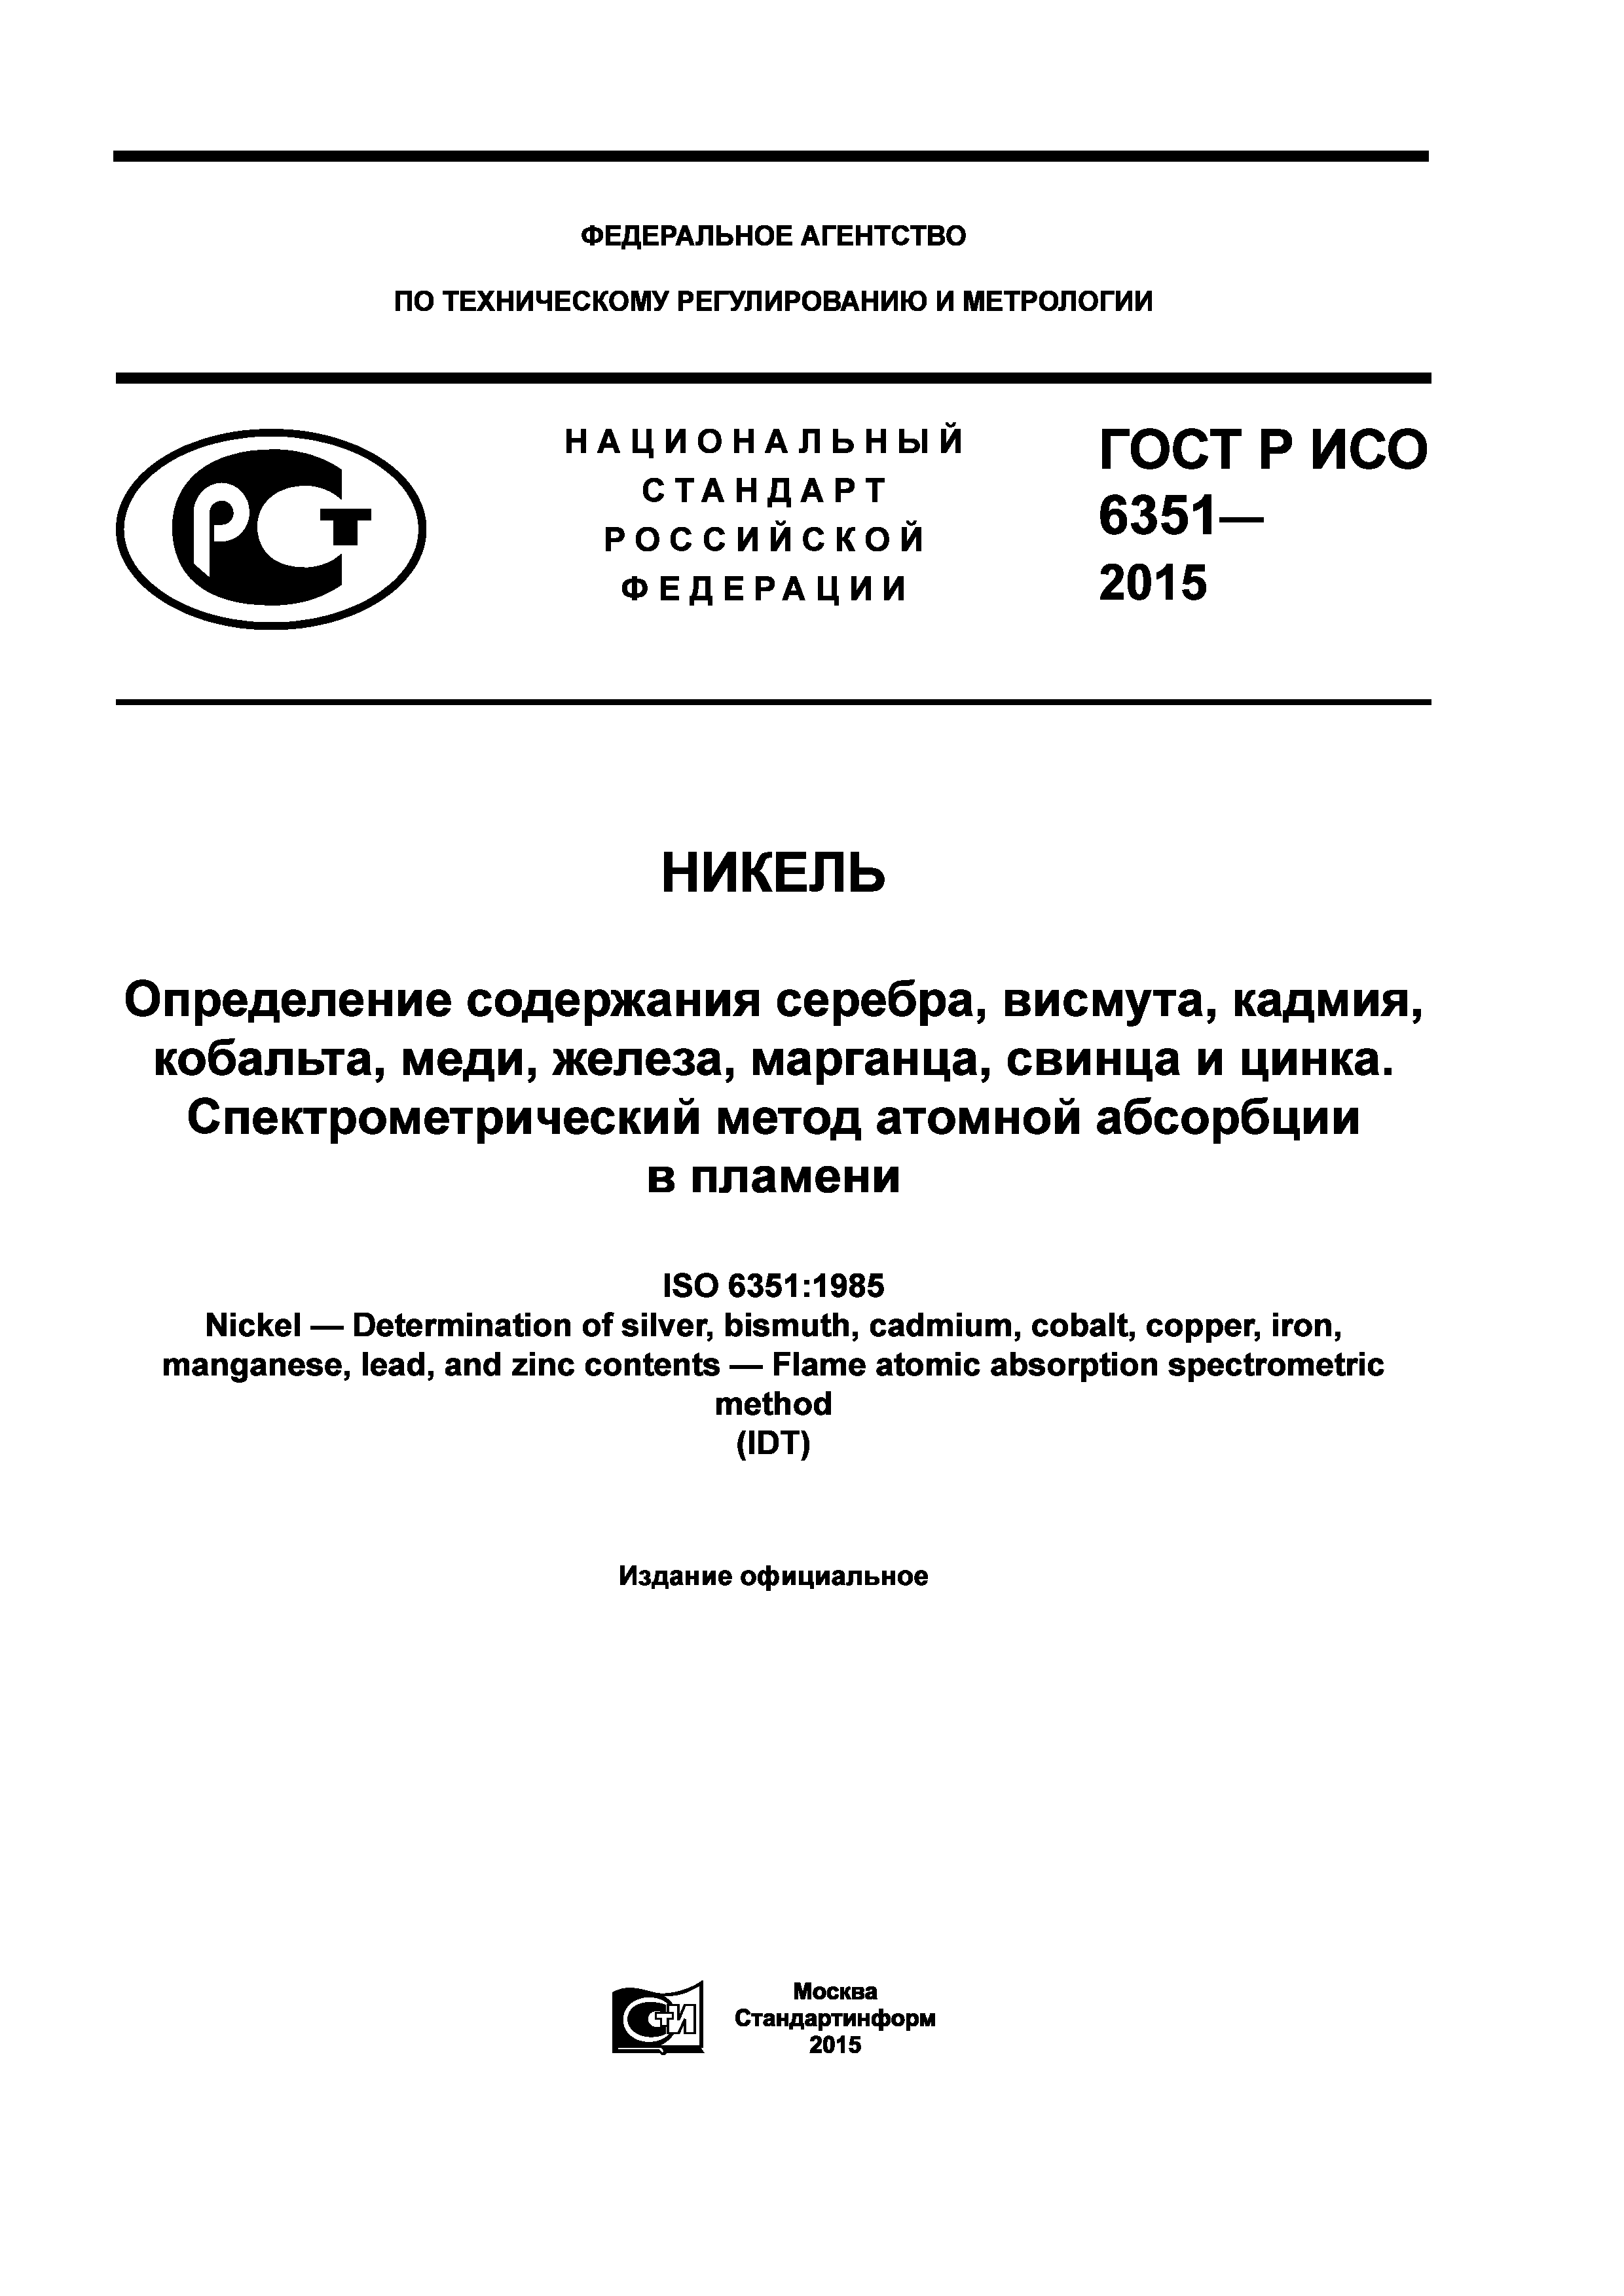 ГОСТ Р ИСО 6351-2015